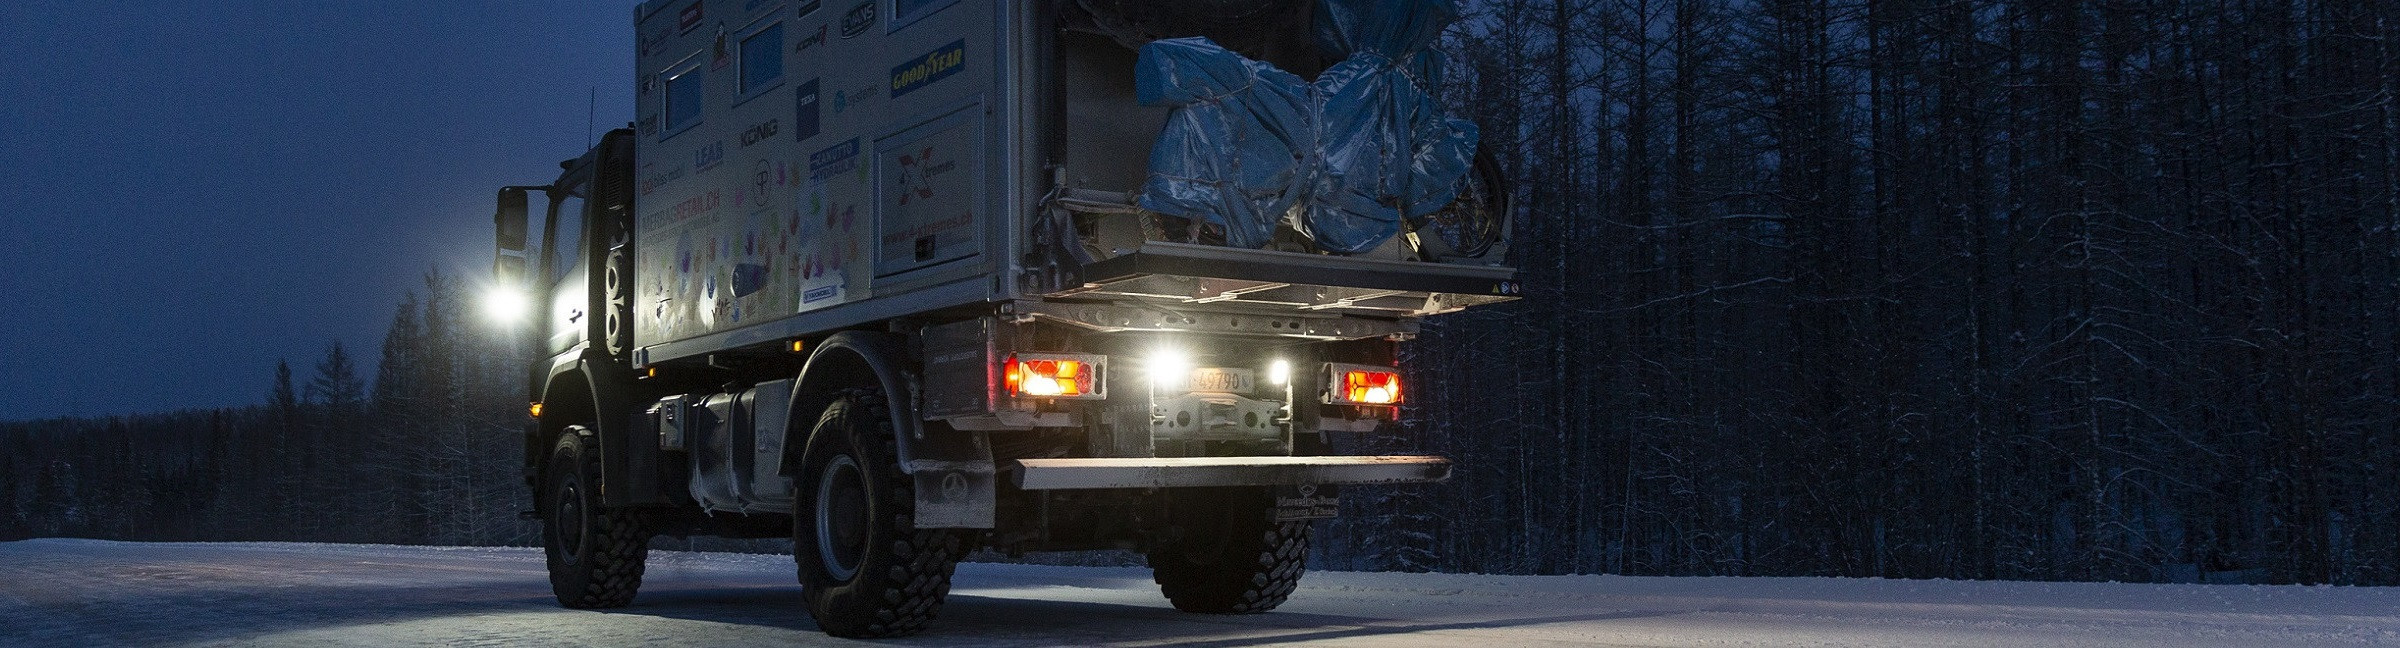 Panel Halterung Mega Sicherung Halter Lastwagen Marine 12V 24V Auto Automobil 